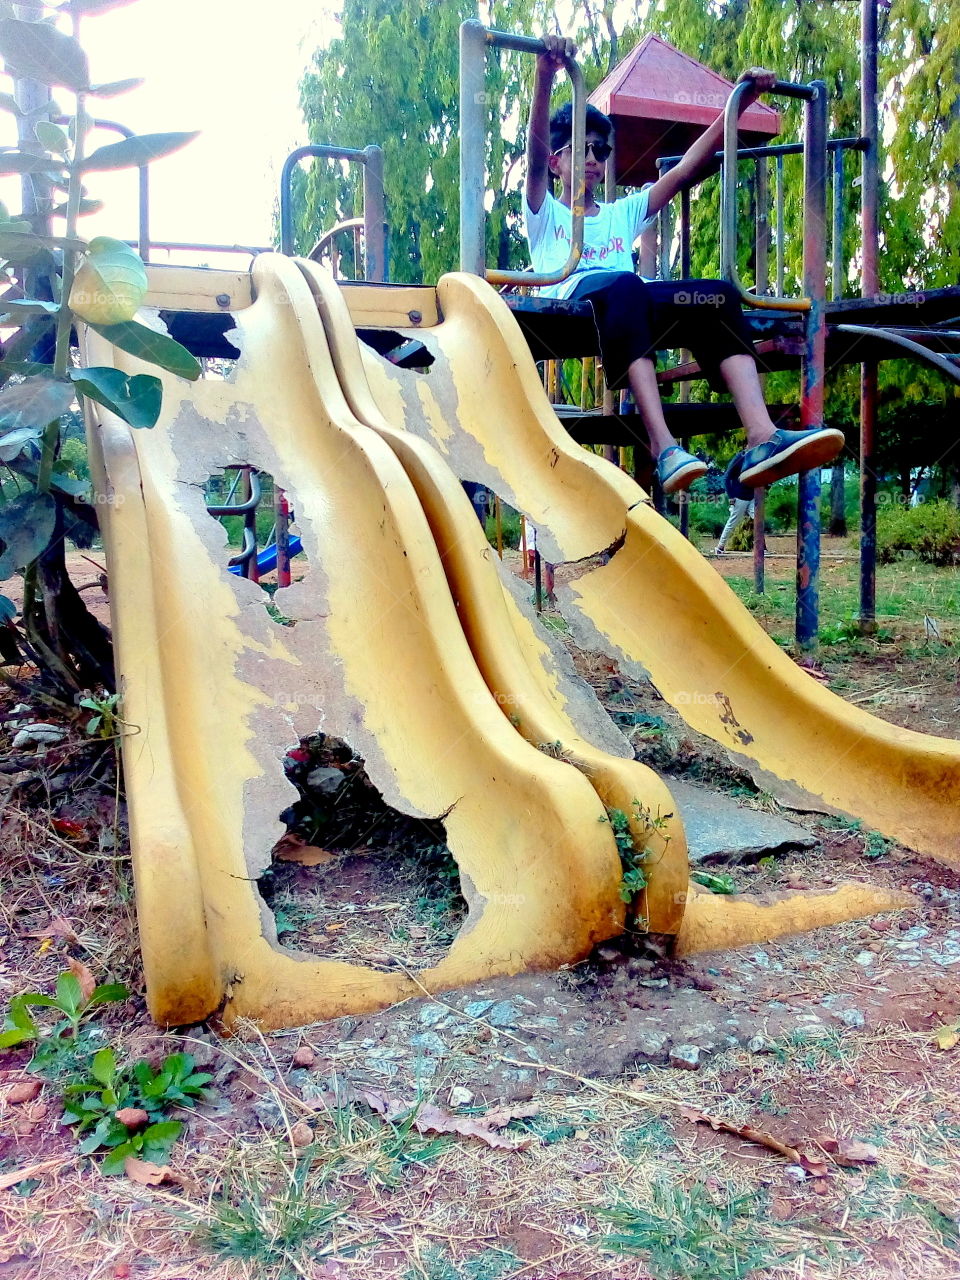 Broken slide in playground